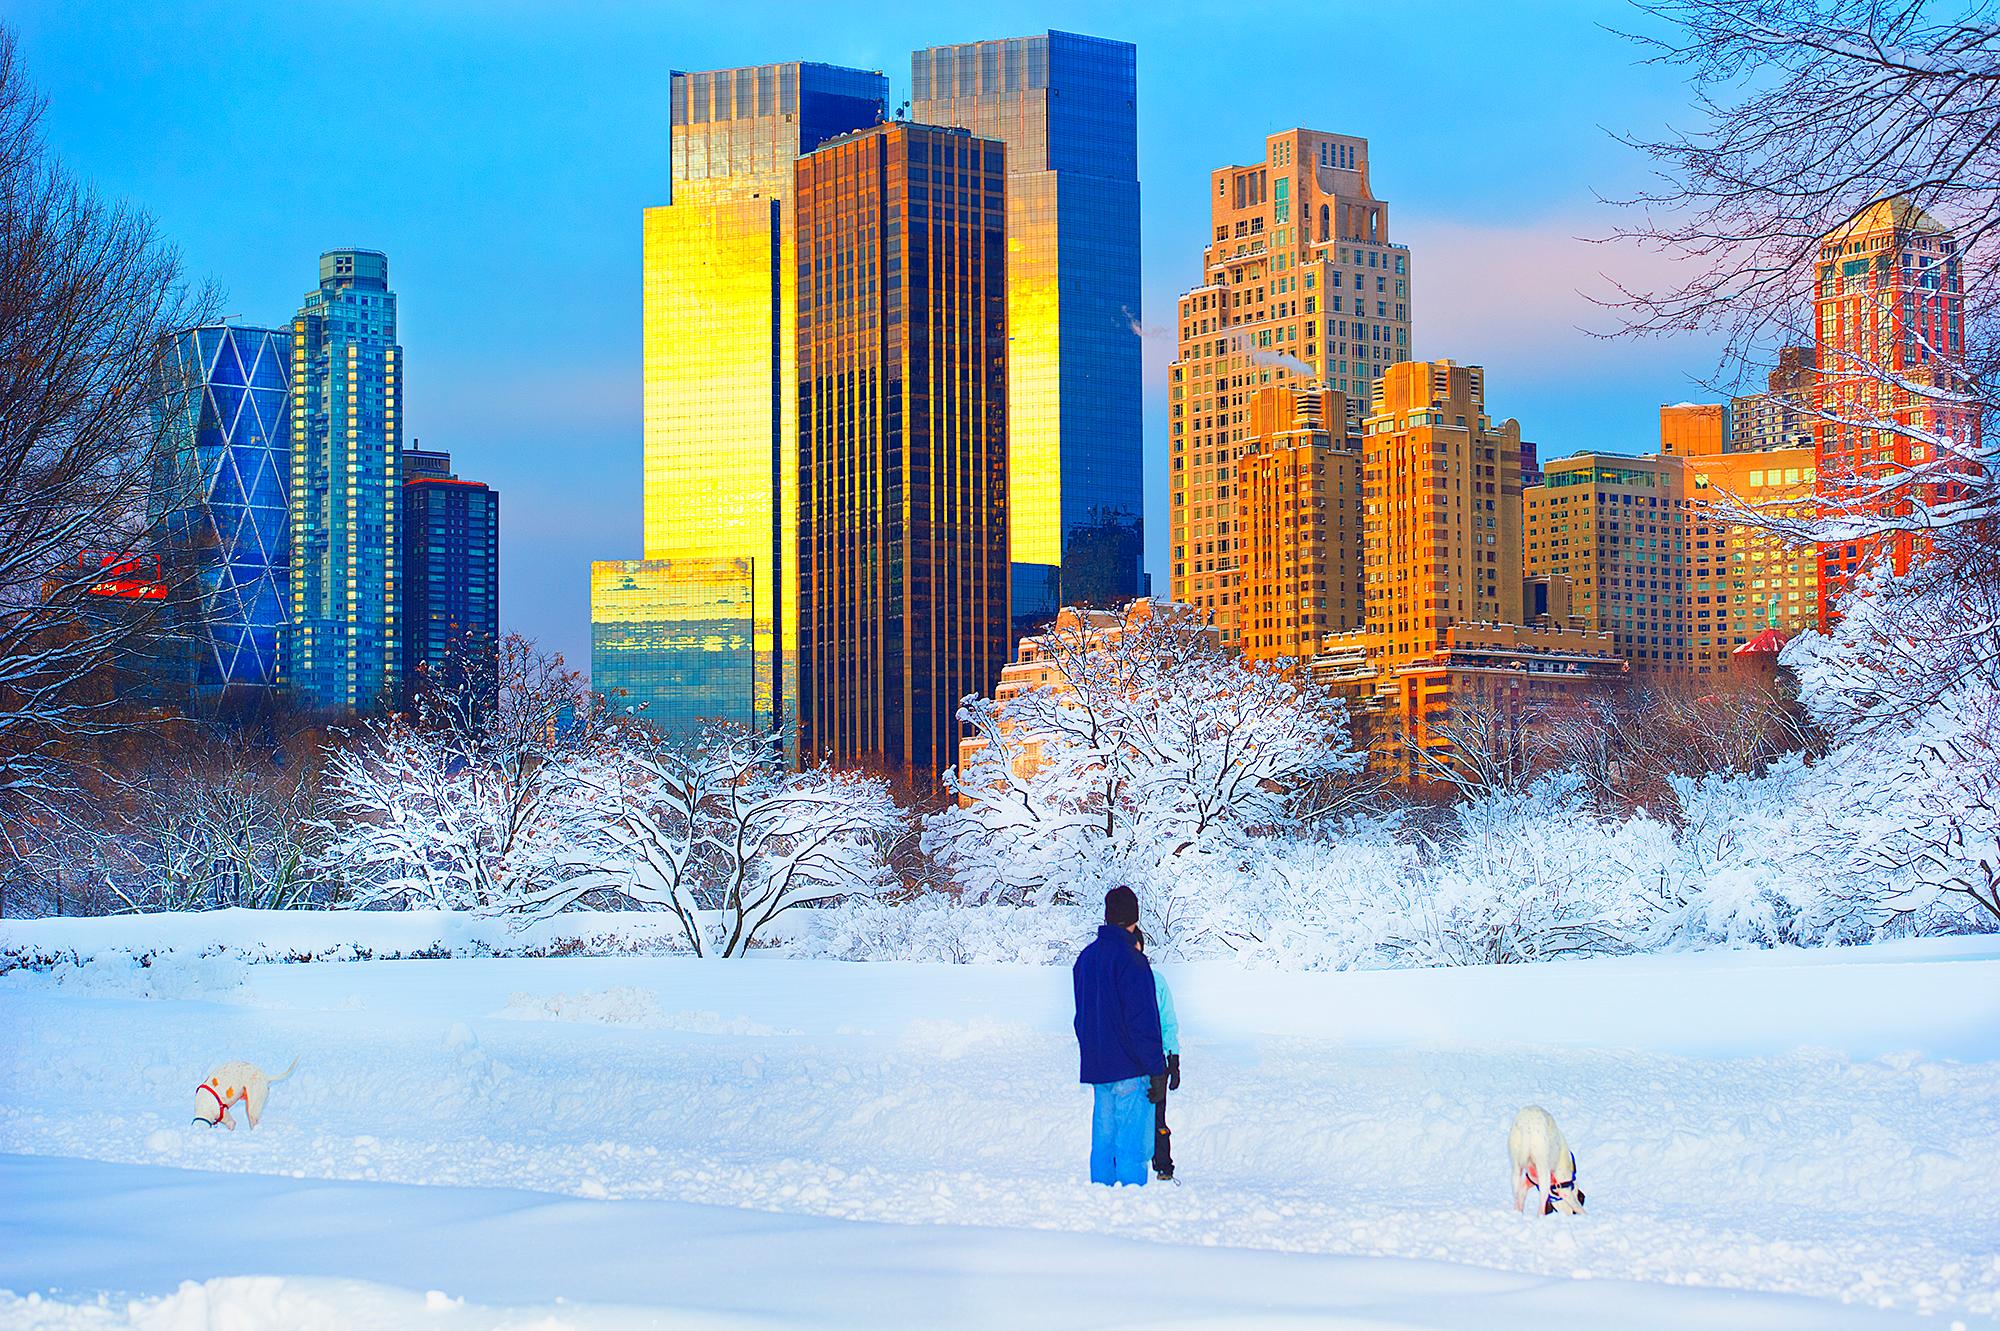 La chute de neige dans un parc central avec des chiens dans la neige, architecture 